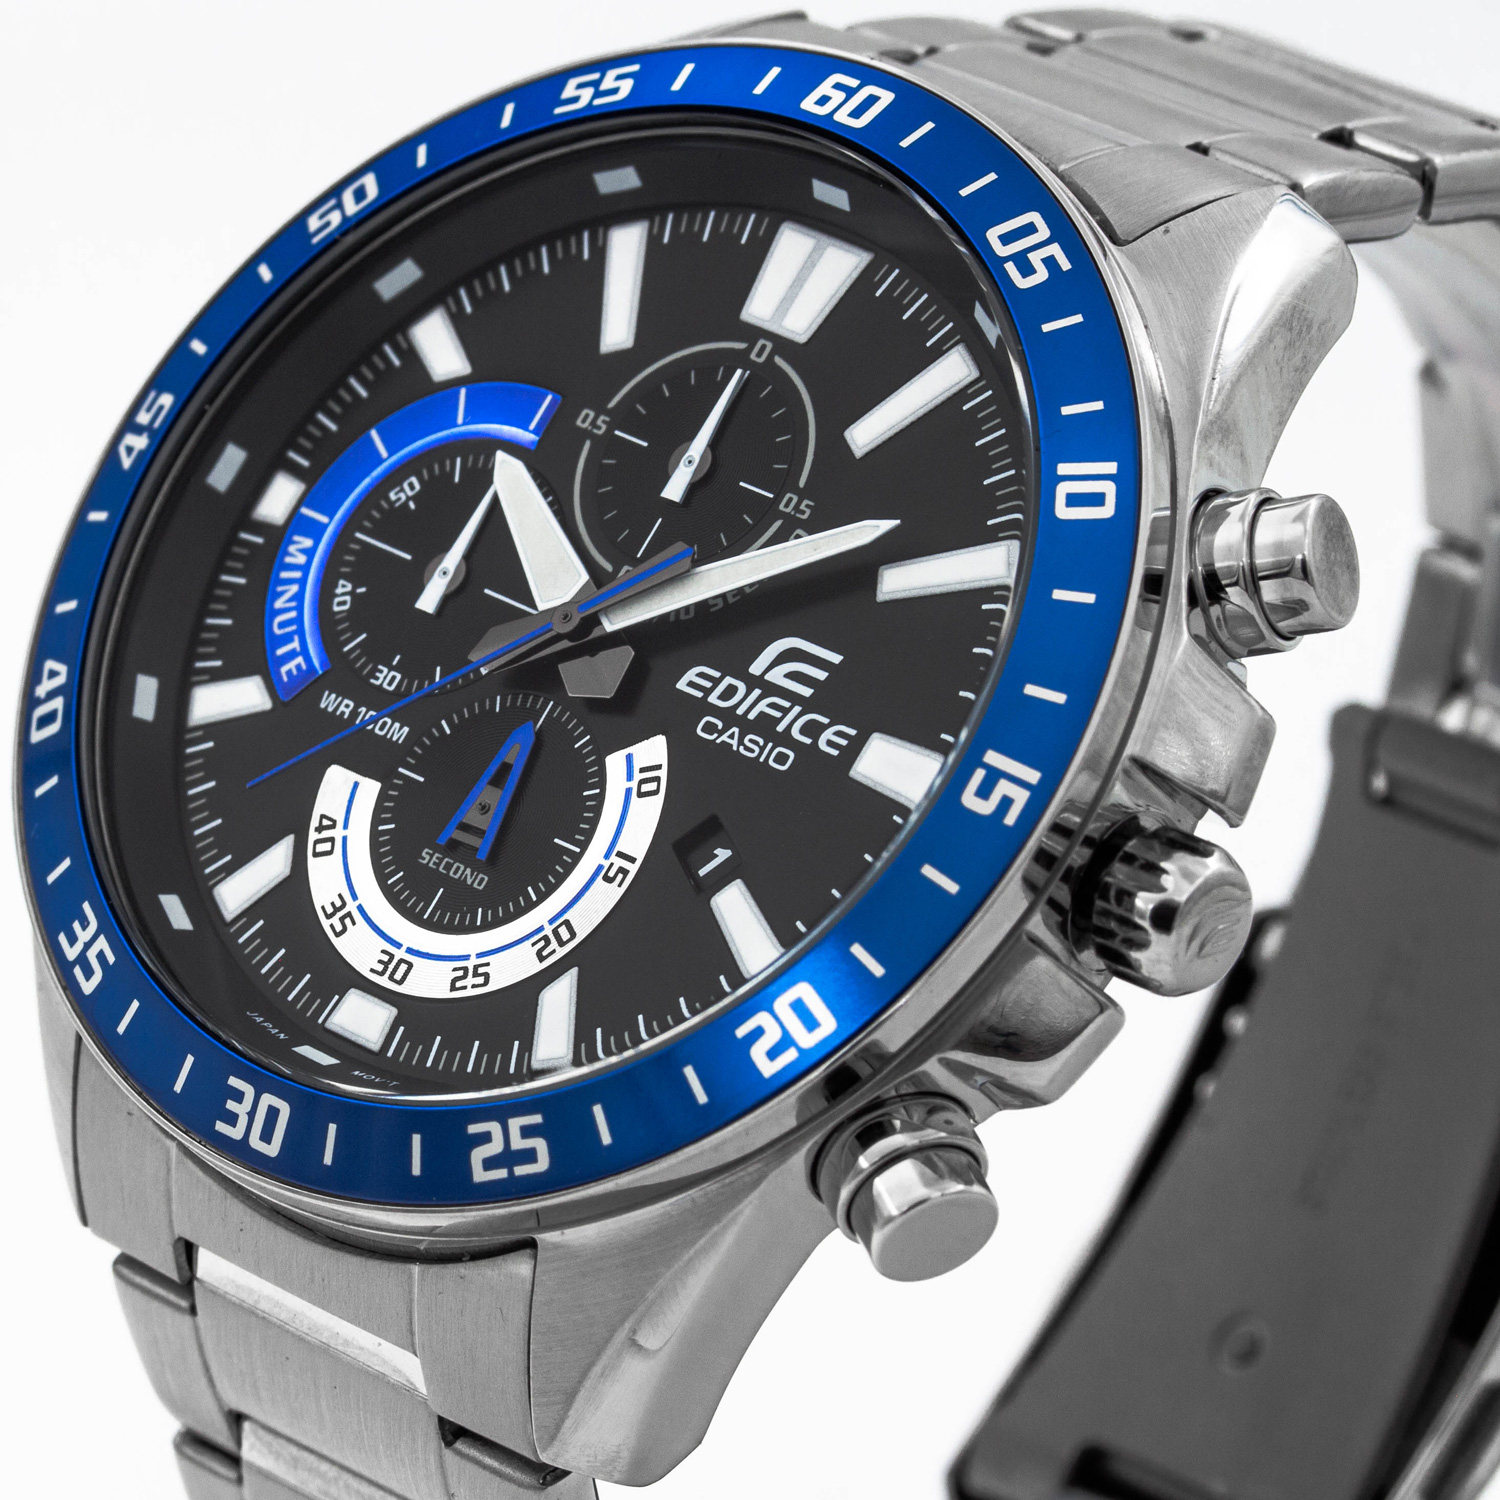 мужские - Casio наручные с доставкой купить в по интернет-магазине Bestwatch.ru. Цена, фото, характеристики. EFV-620D-1A2VUEF Часы - часы